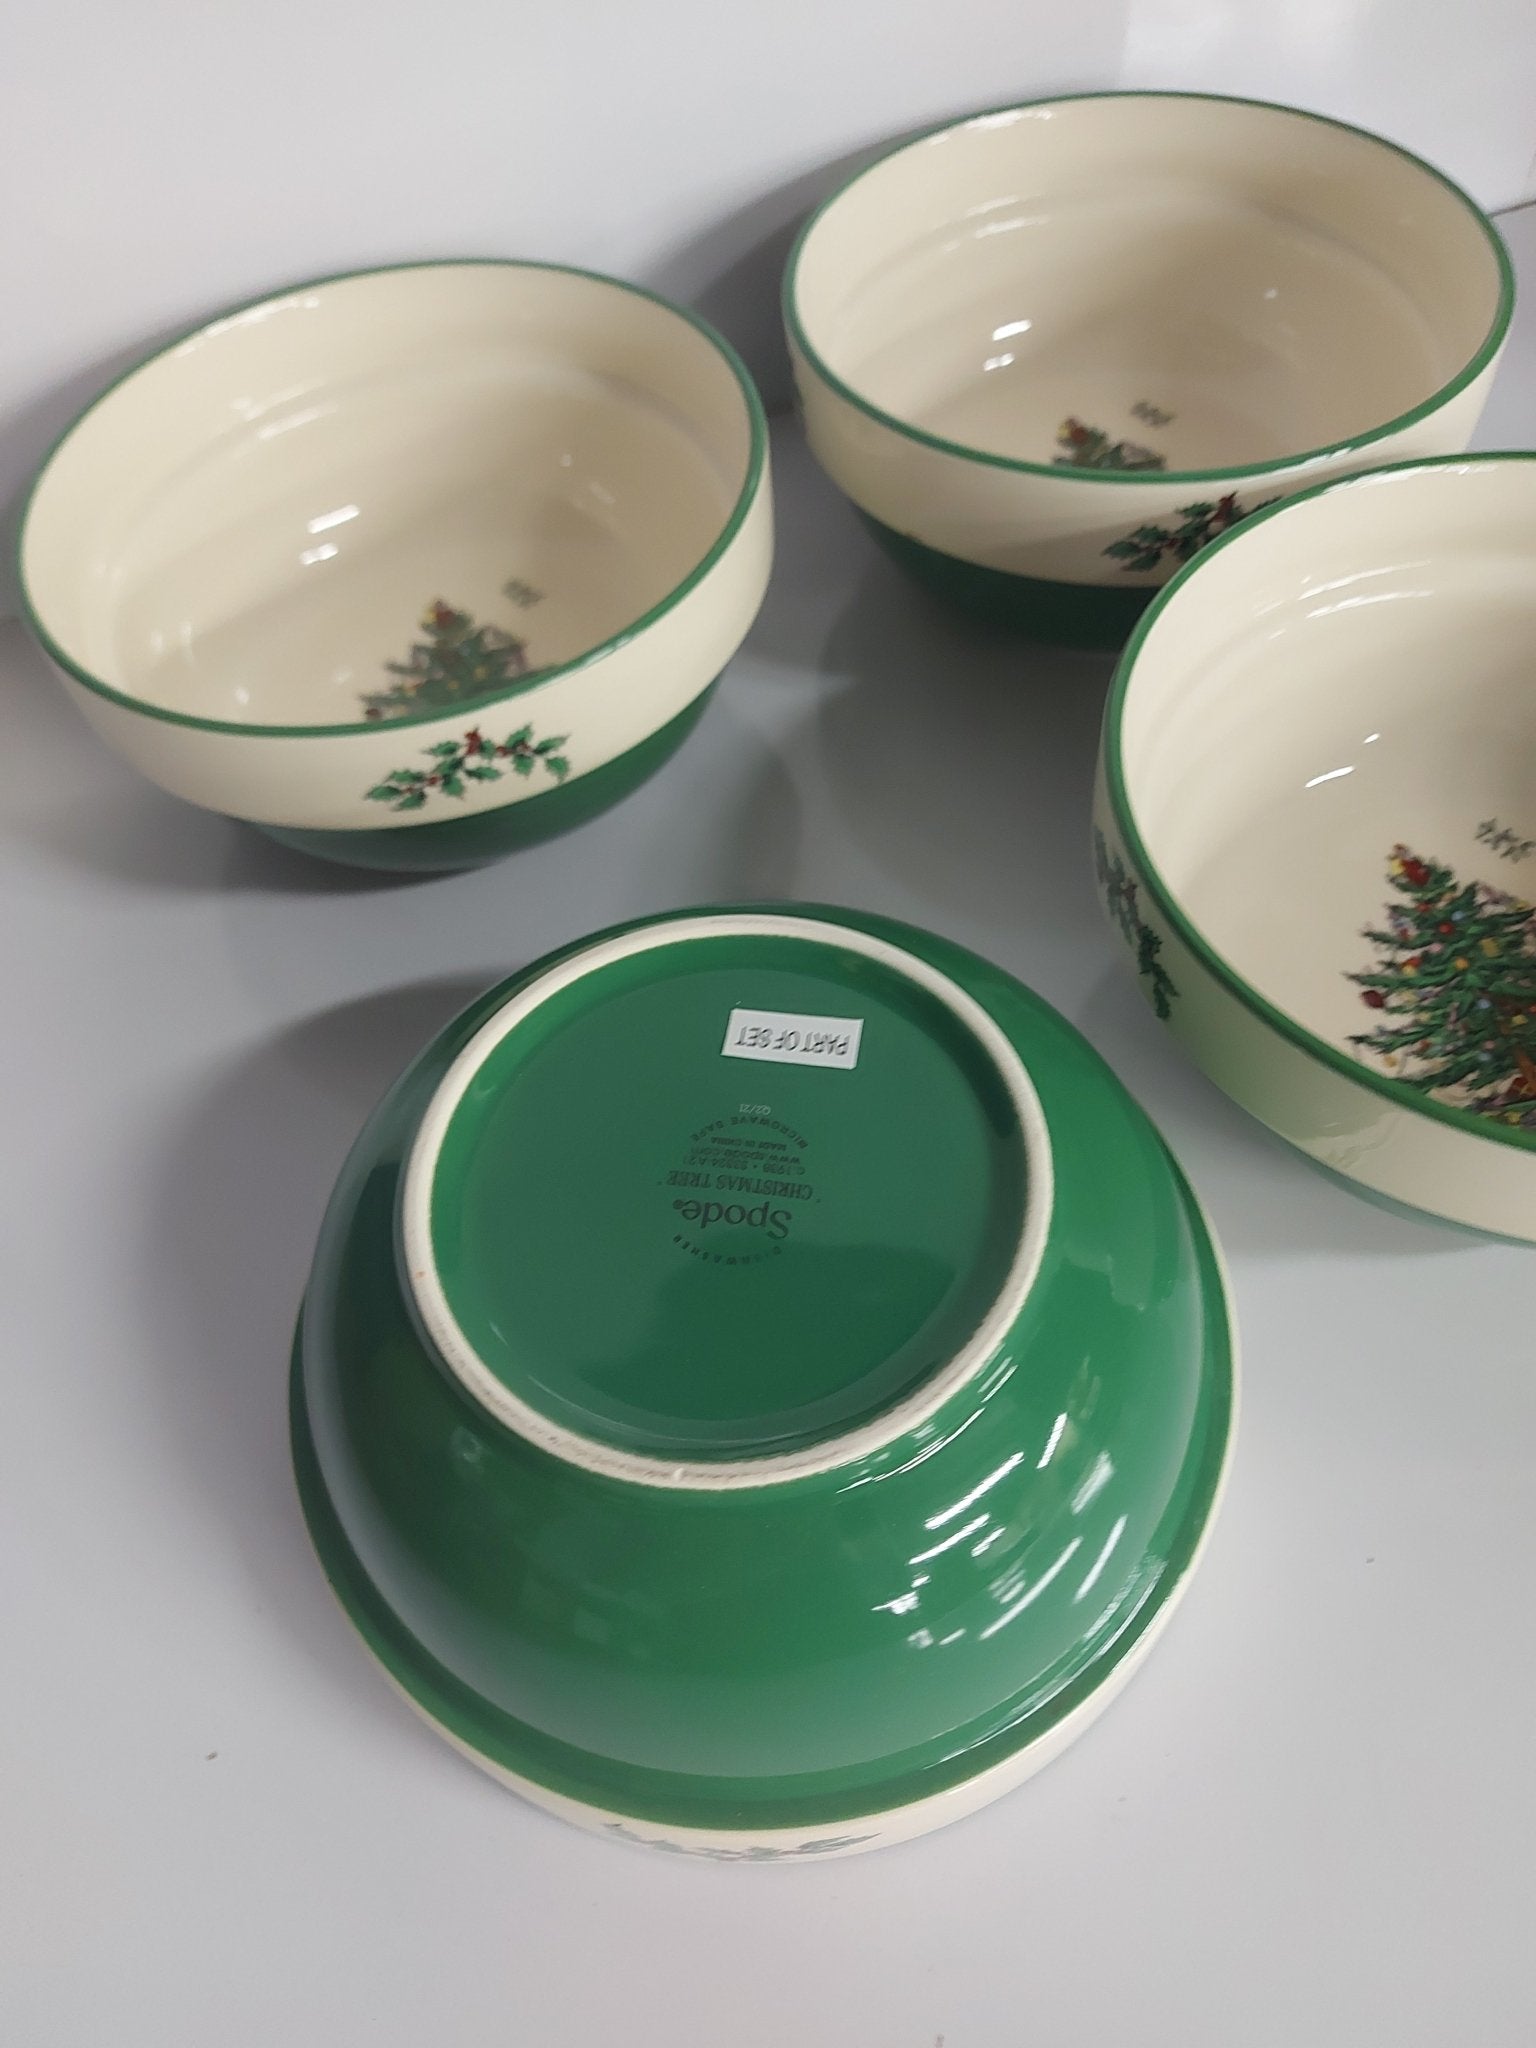 Spode Christmas Tree 5.5" Stacking bowls set of 4 - Shoppedeals